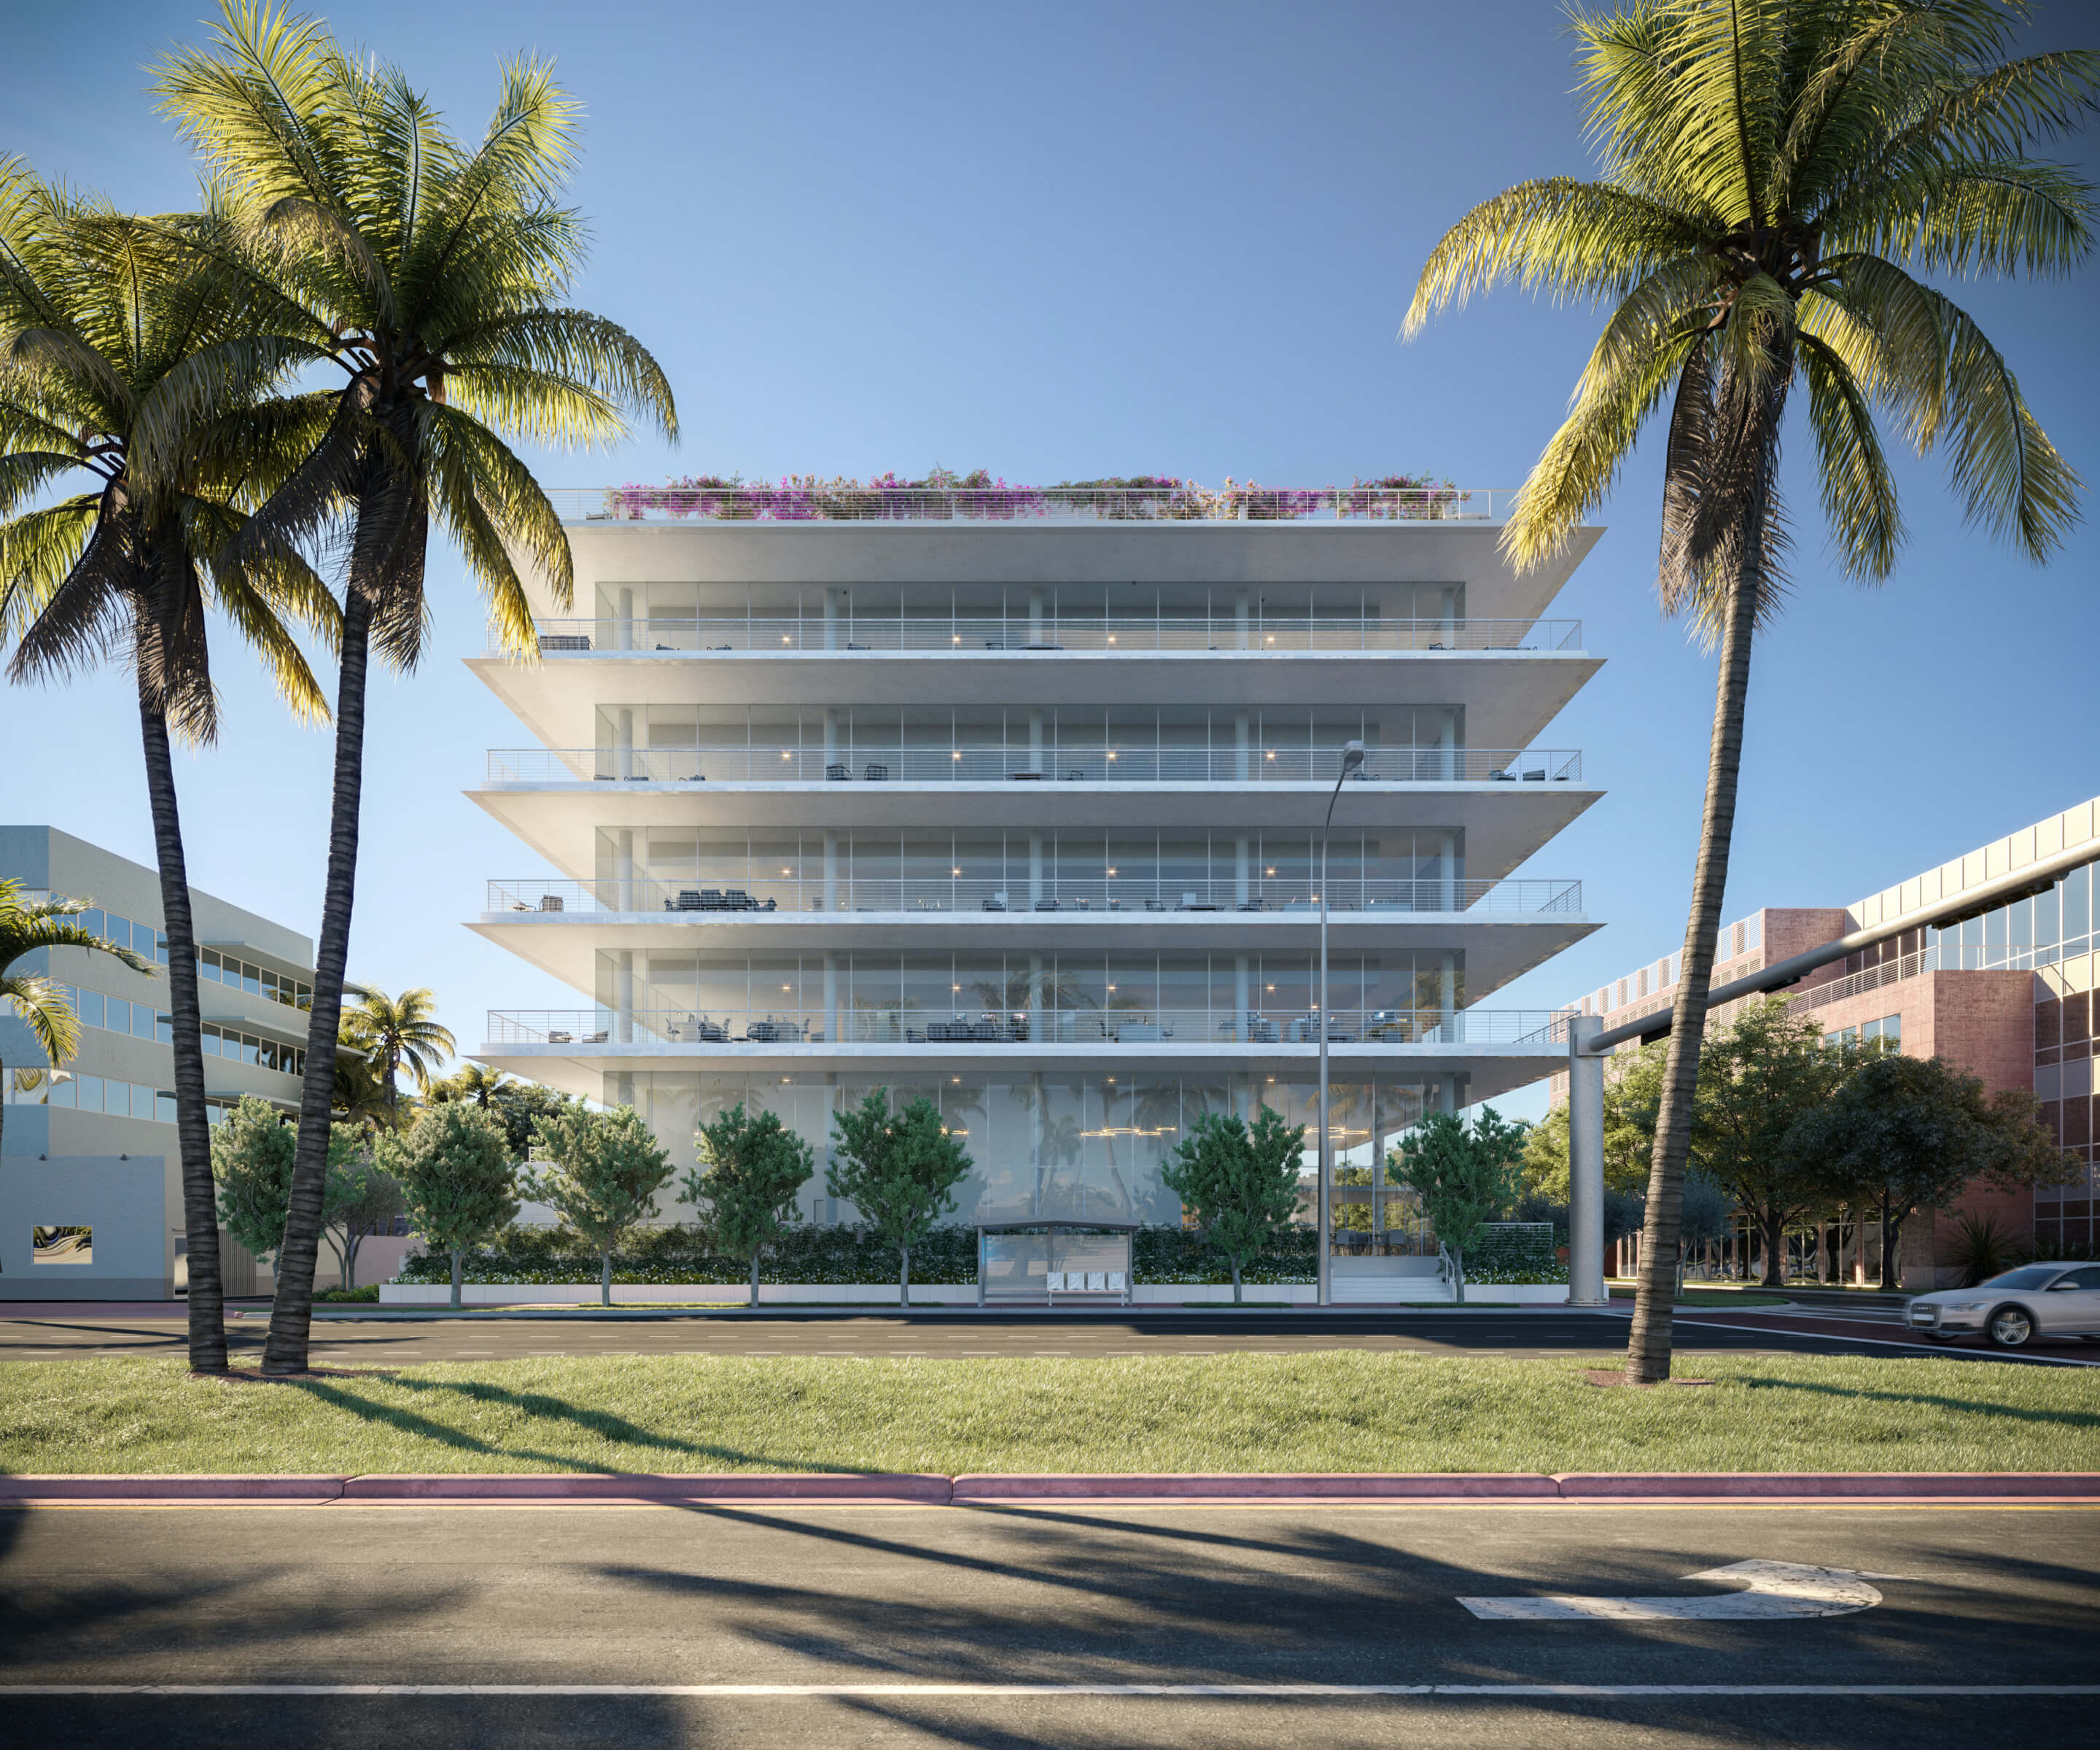 Miami Beach Parking, South Beach Parking 2023 - Miami Beach Advisor